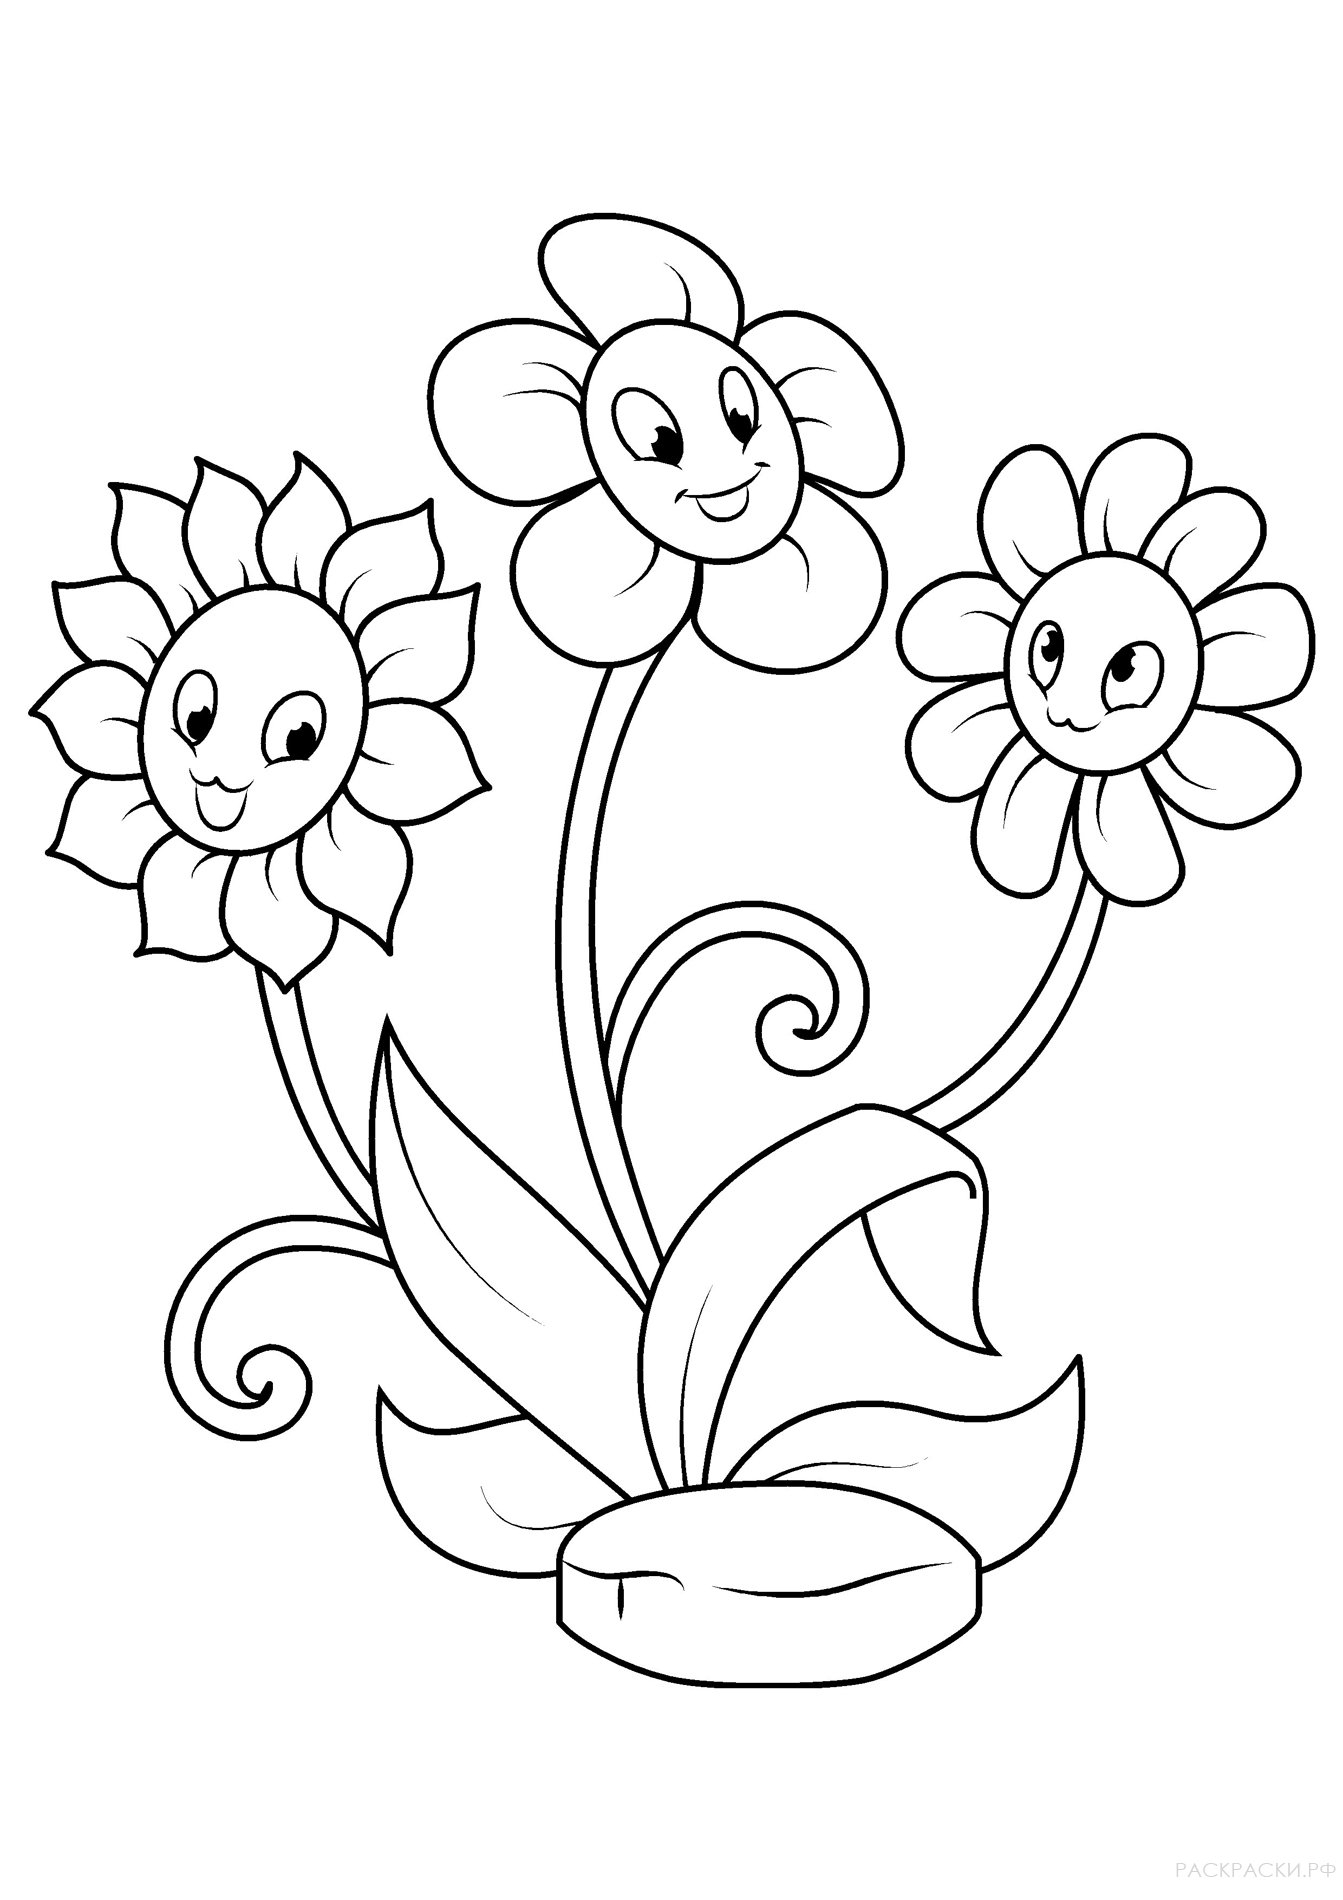 Распечатать раскраски цветов для маленьких детей. Простые раскраски цветов